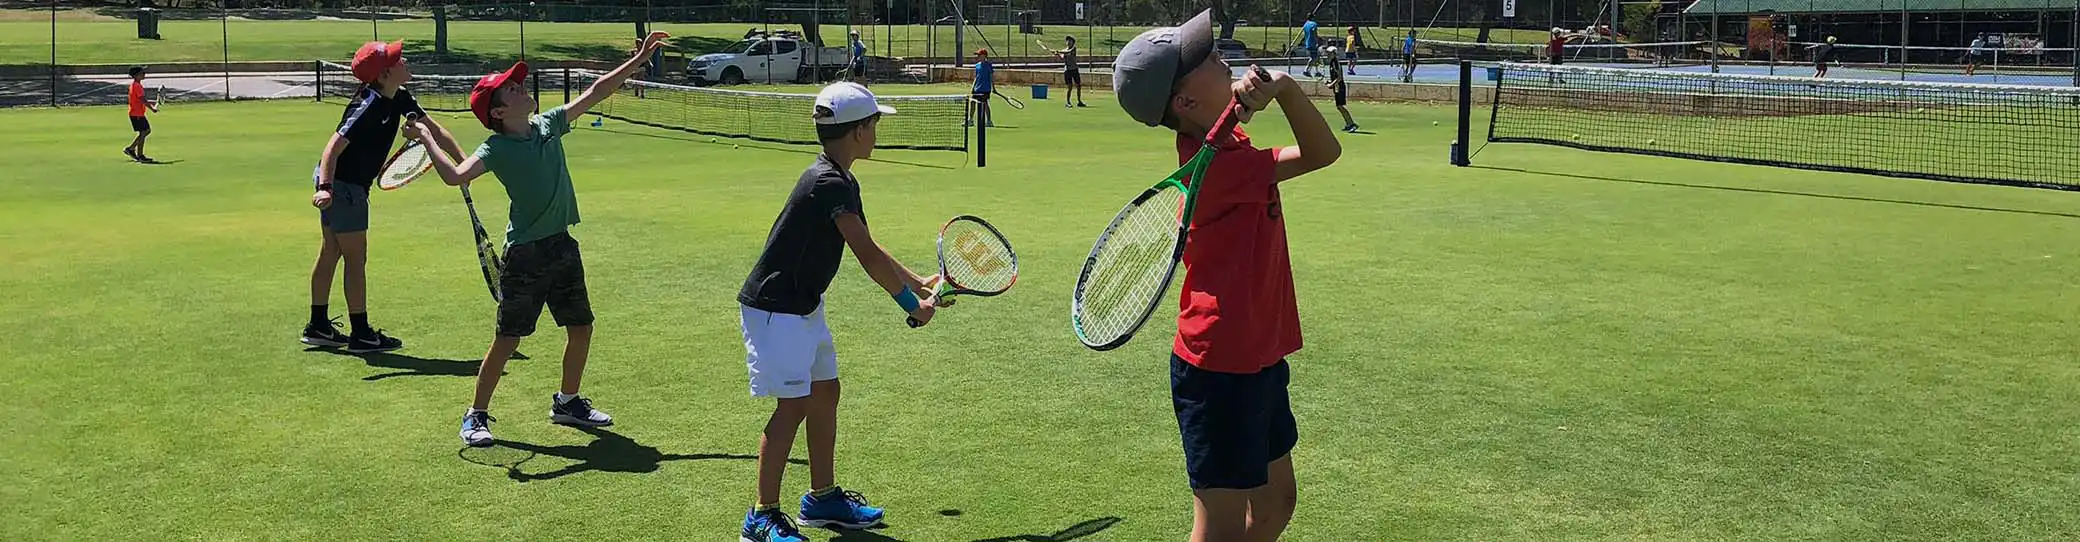 Junior tennis lesson at OPTC